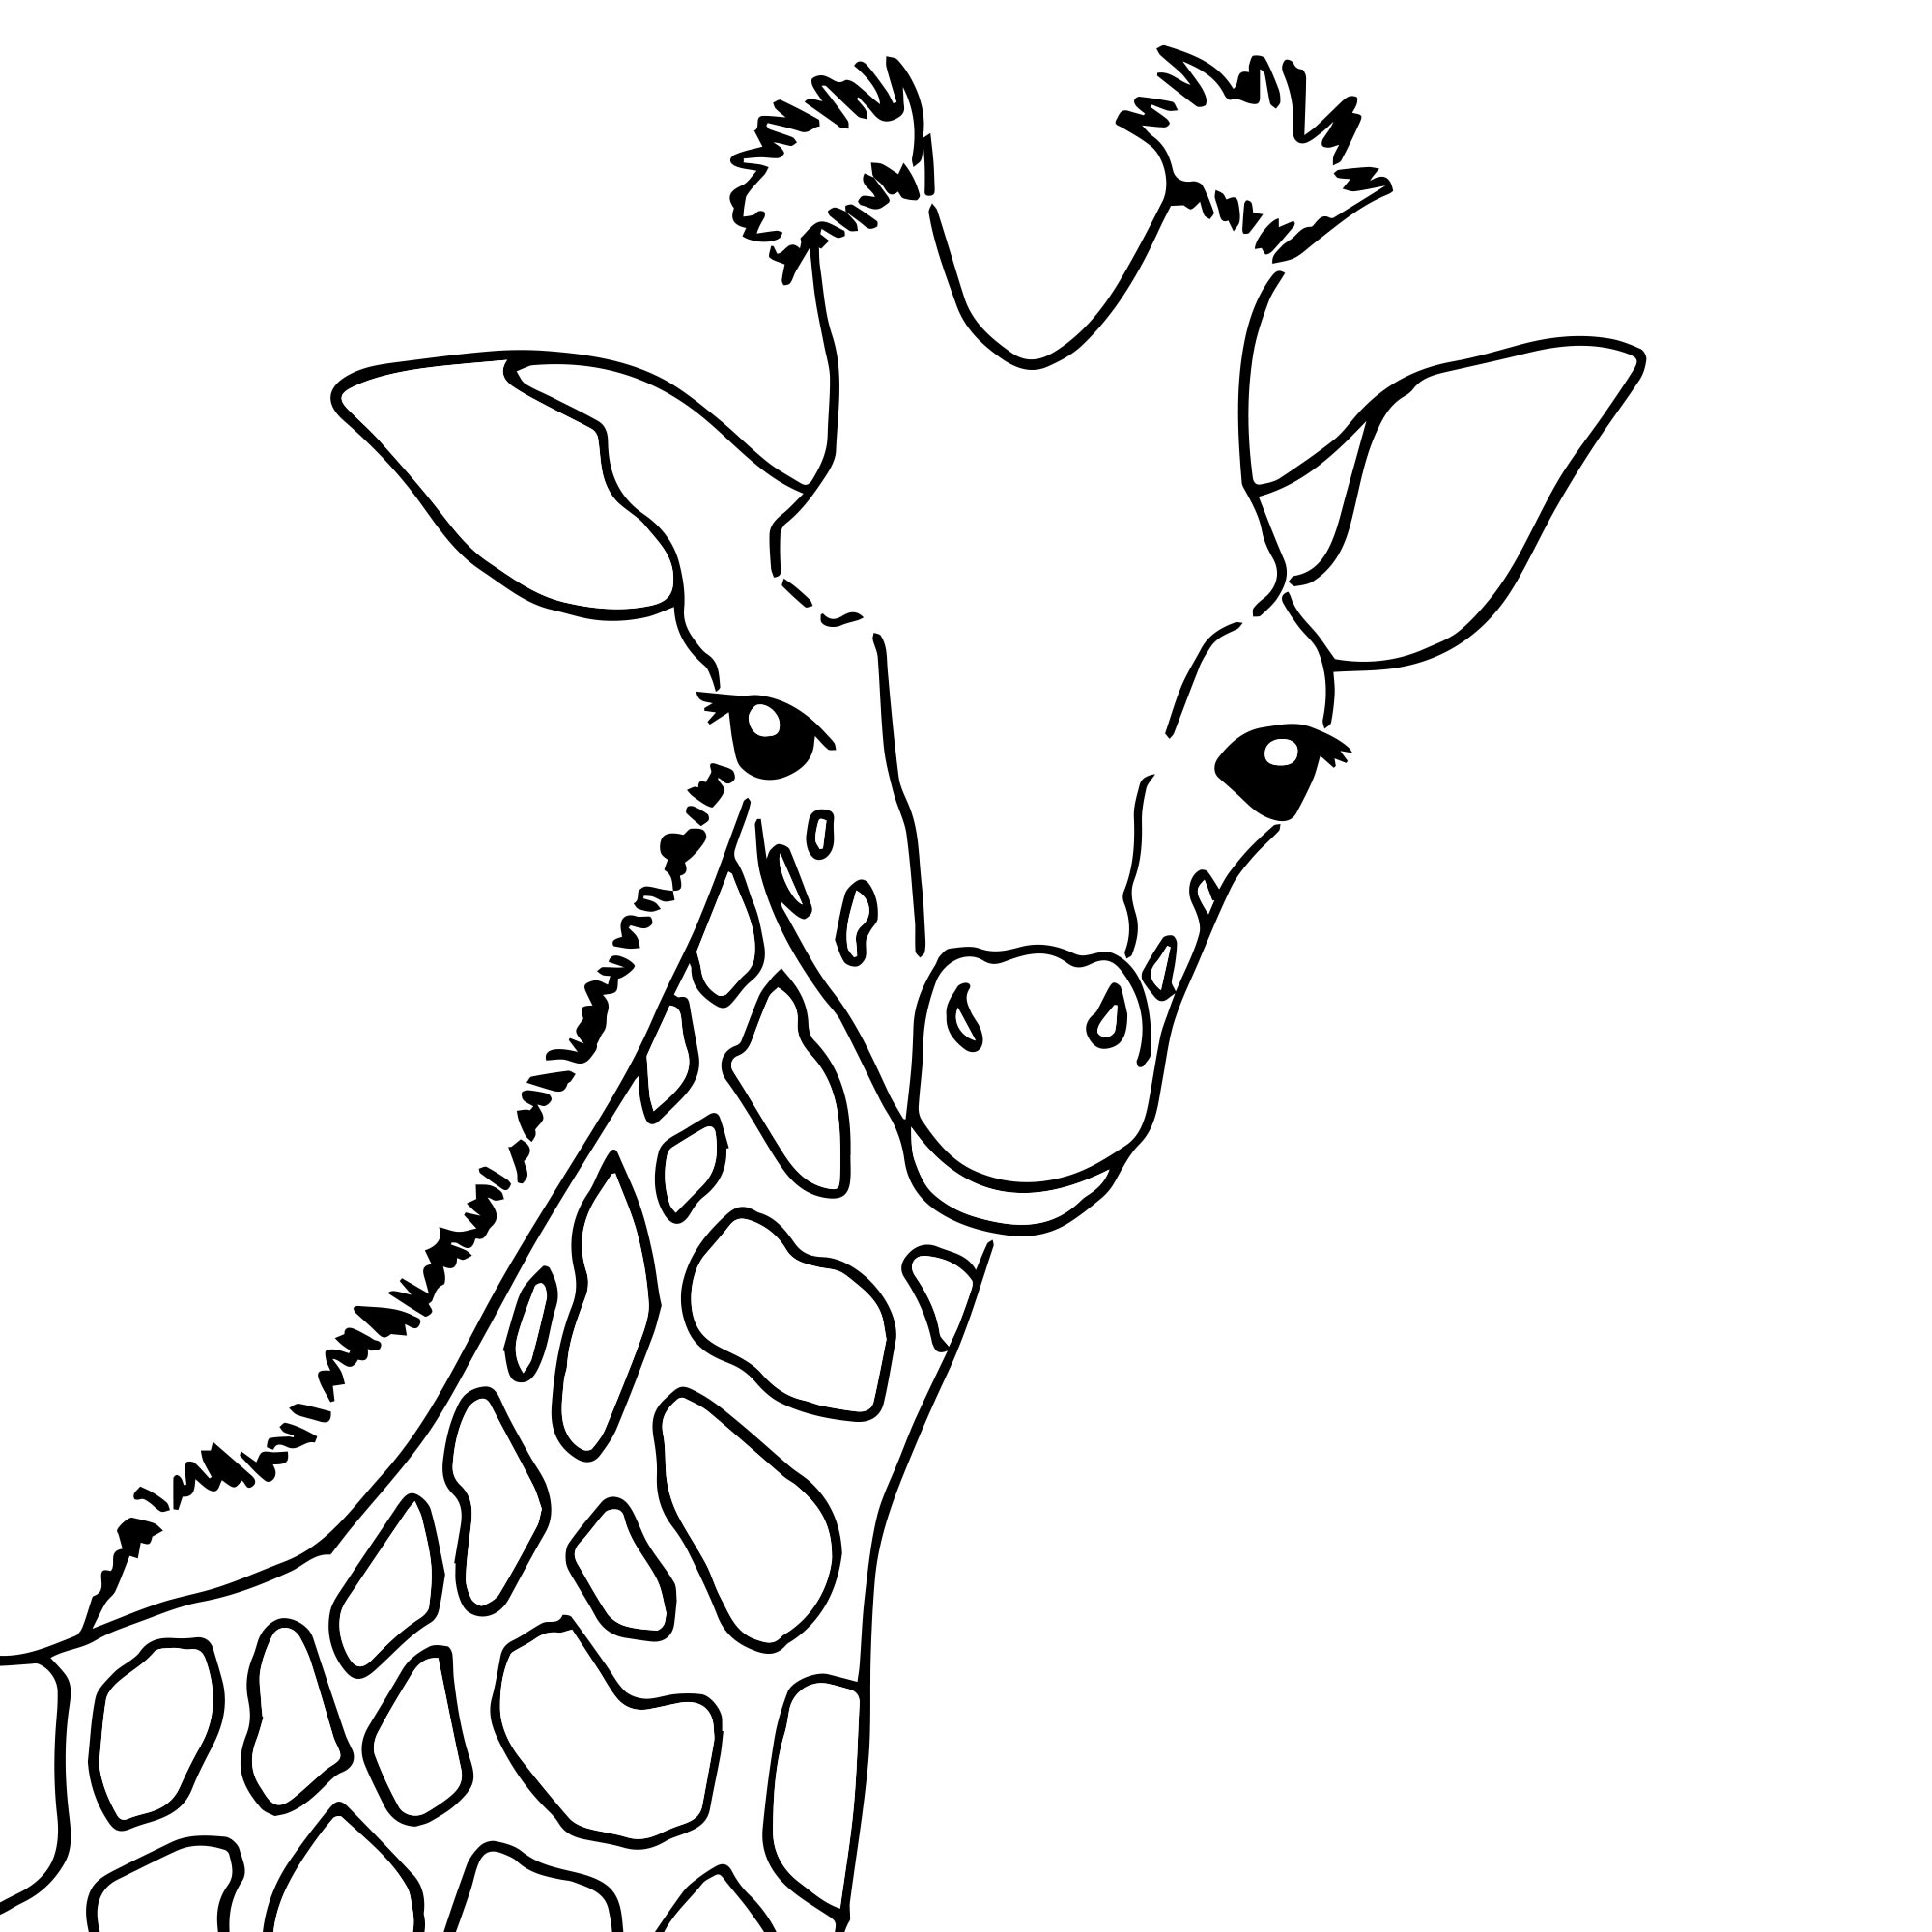 Раскраска жирафа для детей | Премиум векторы